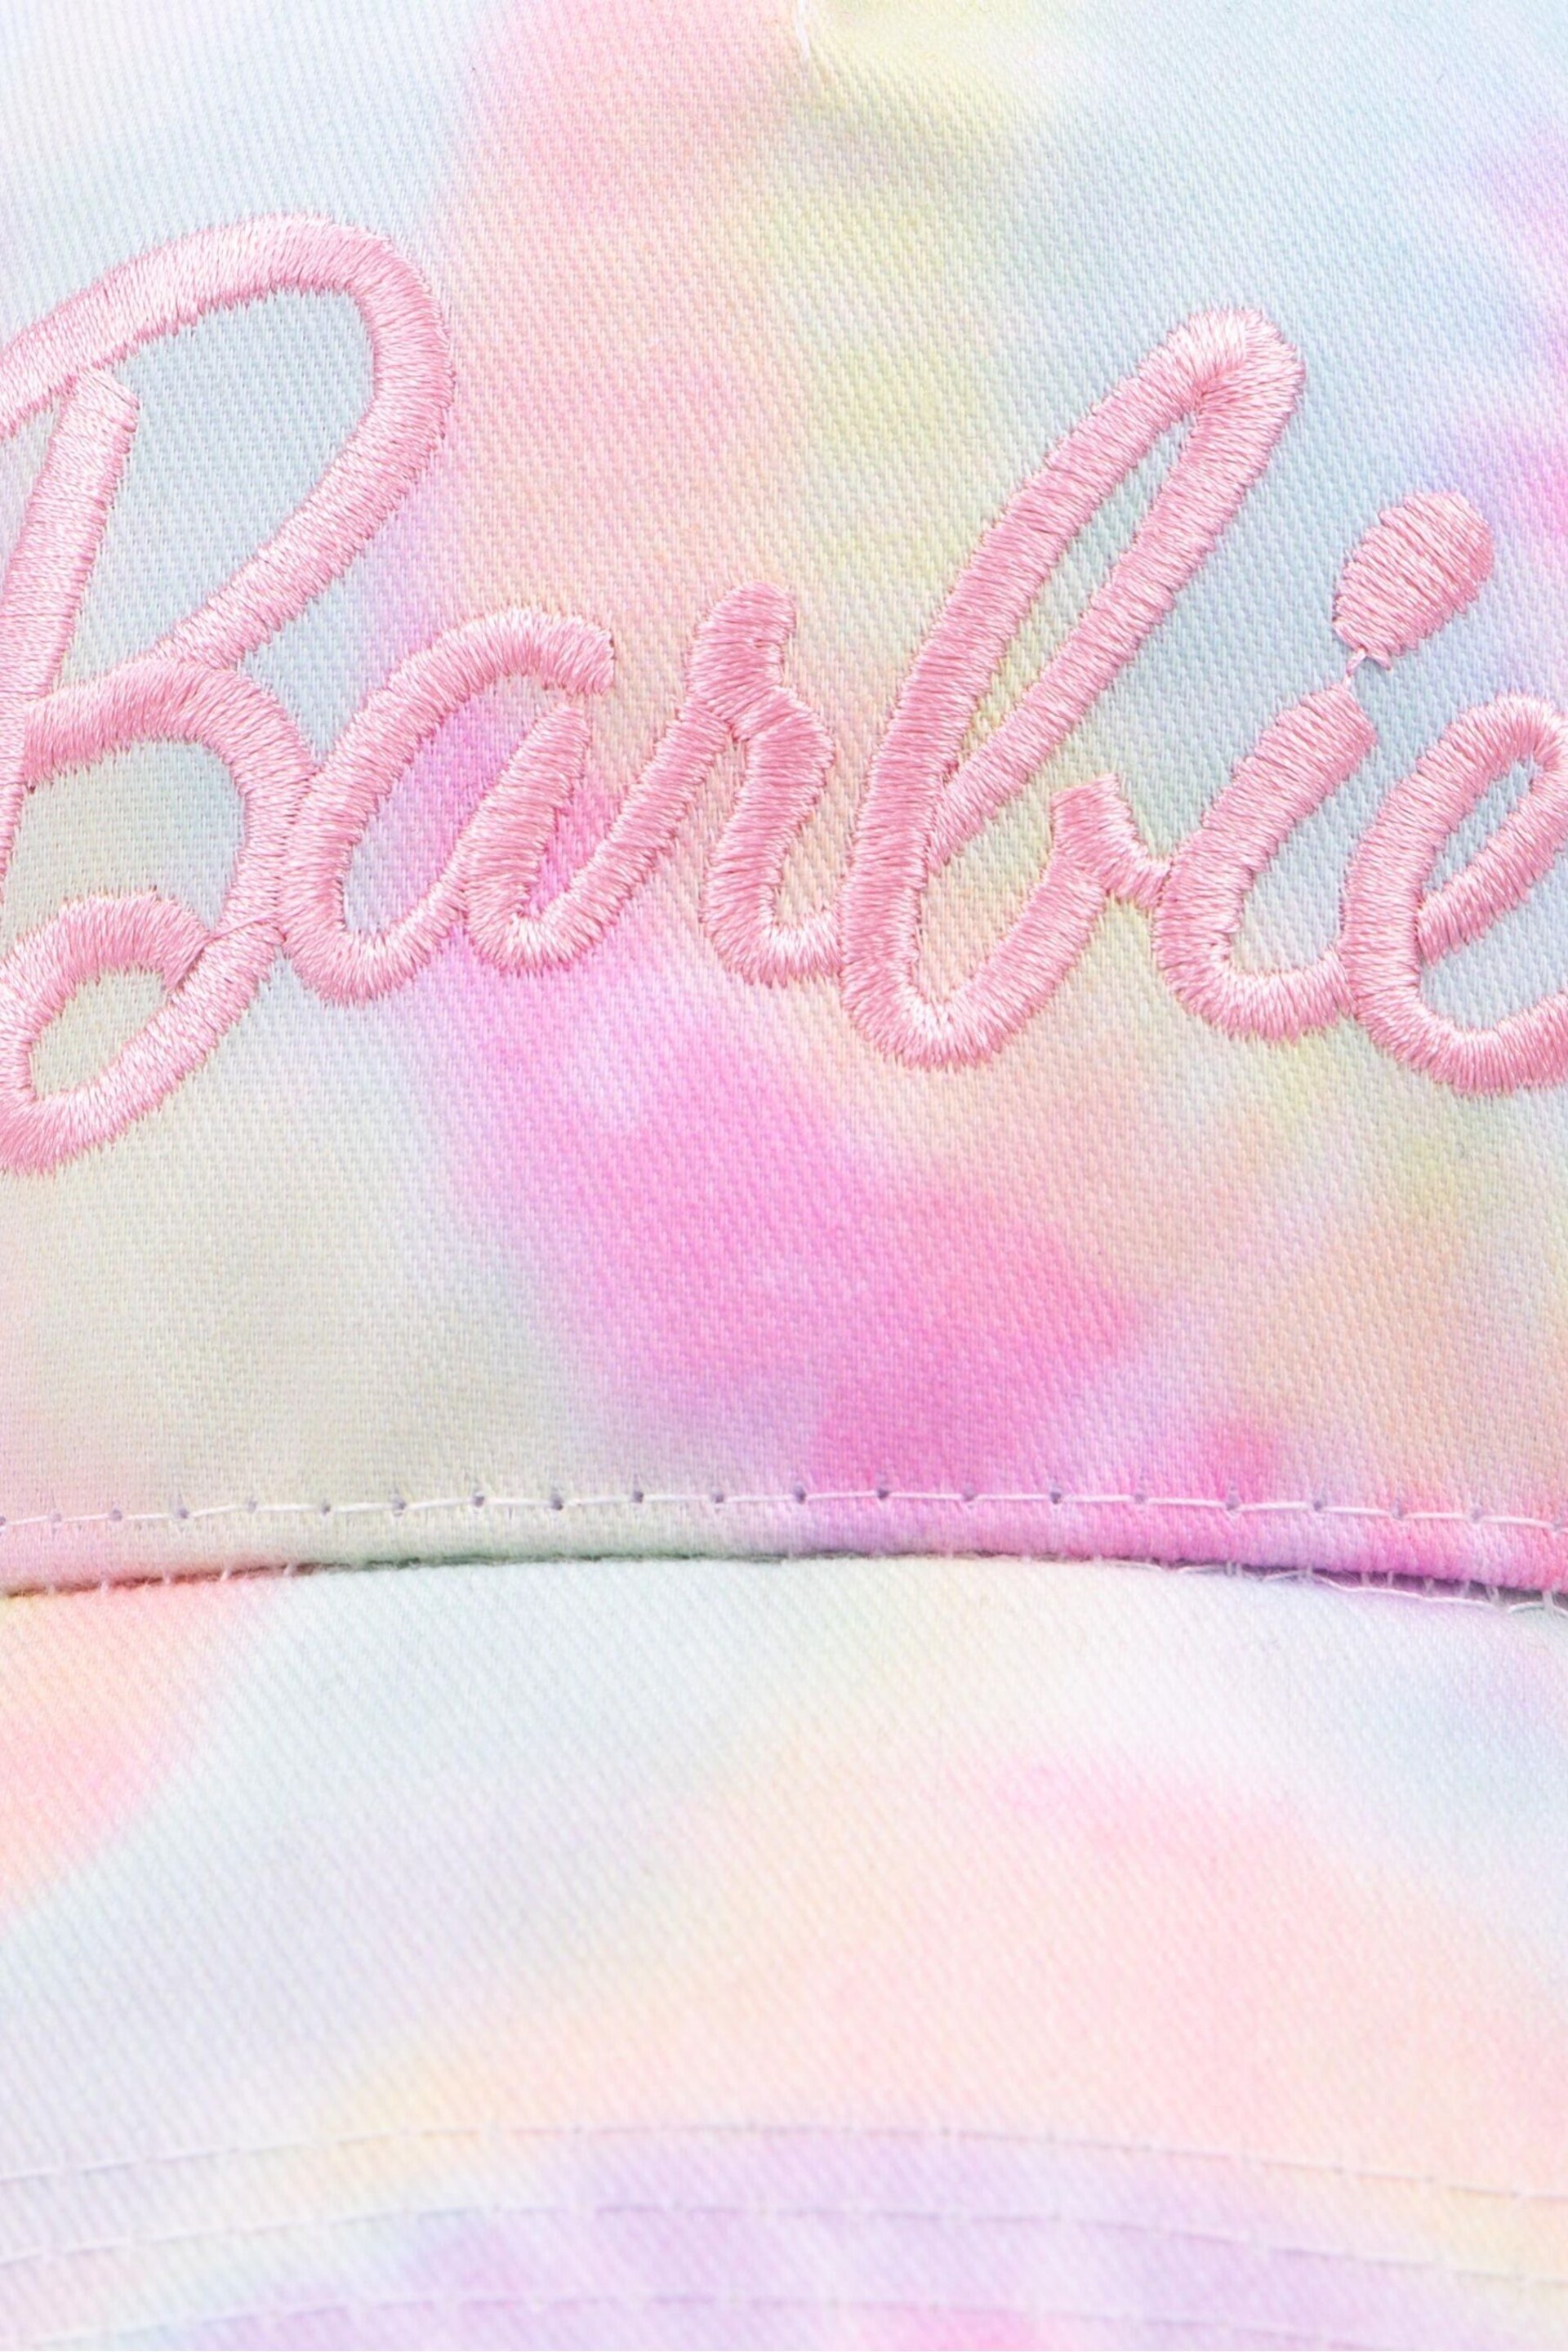 Vanilla Underground Pink Girls Tie-Dye Barbie Cap - Image 7 of 8